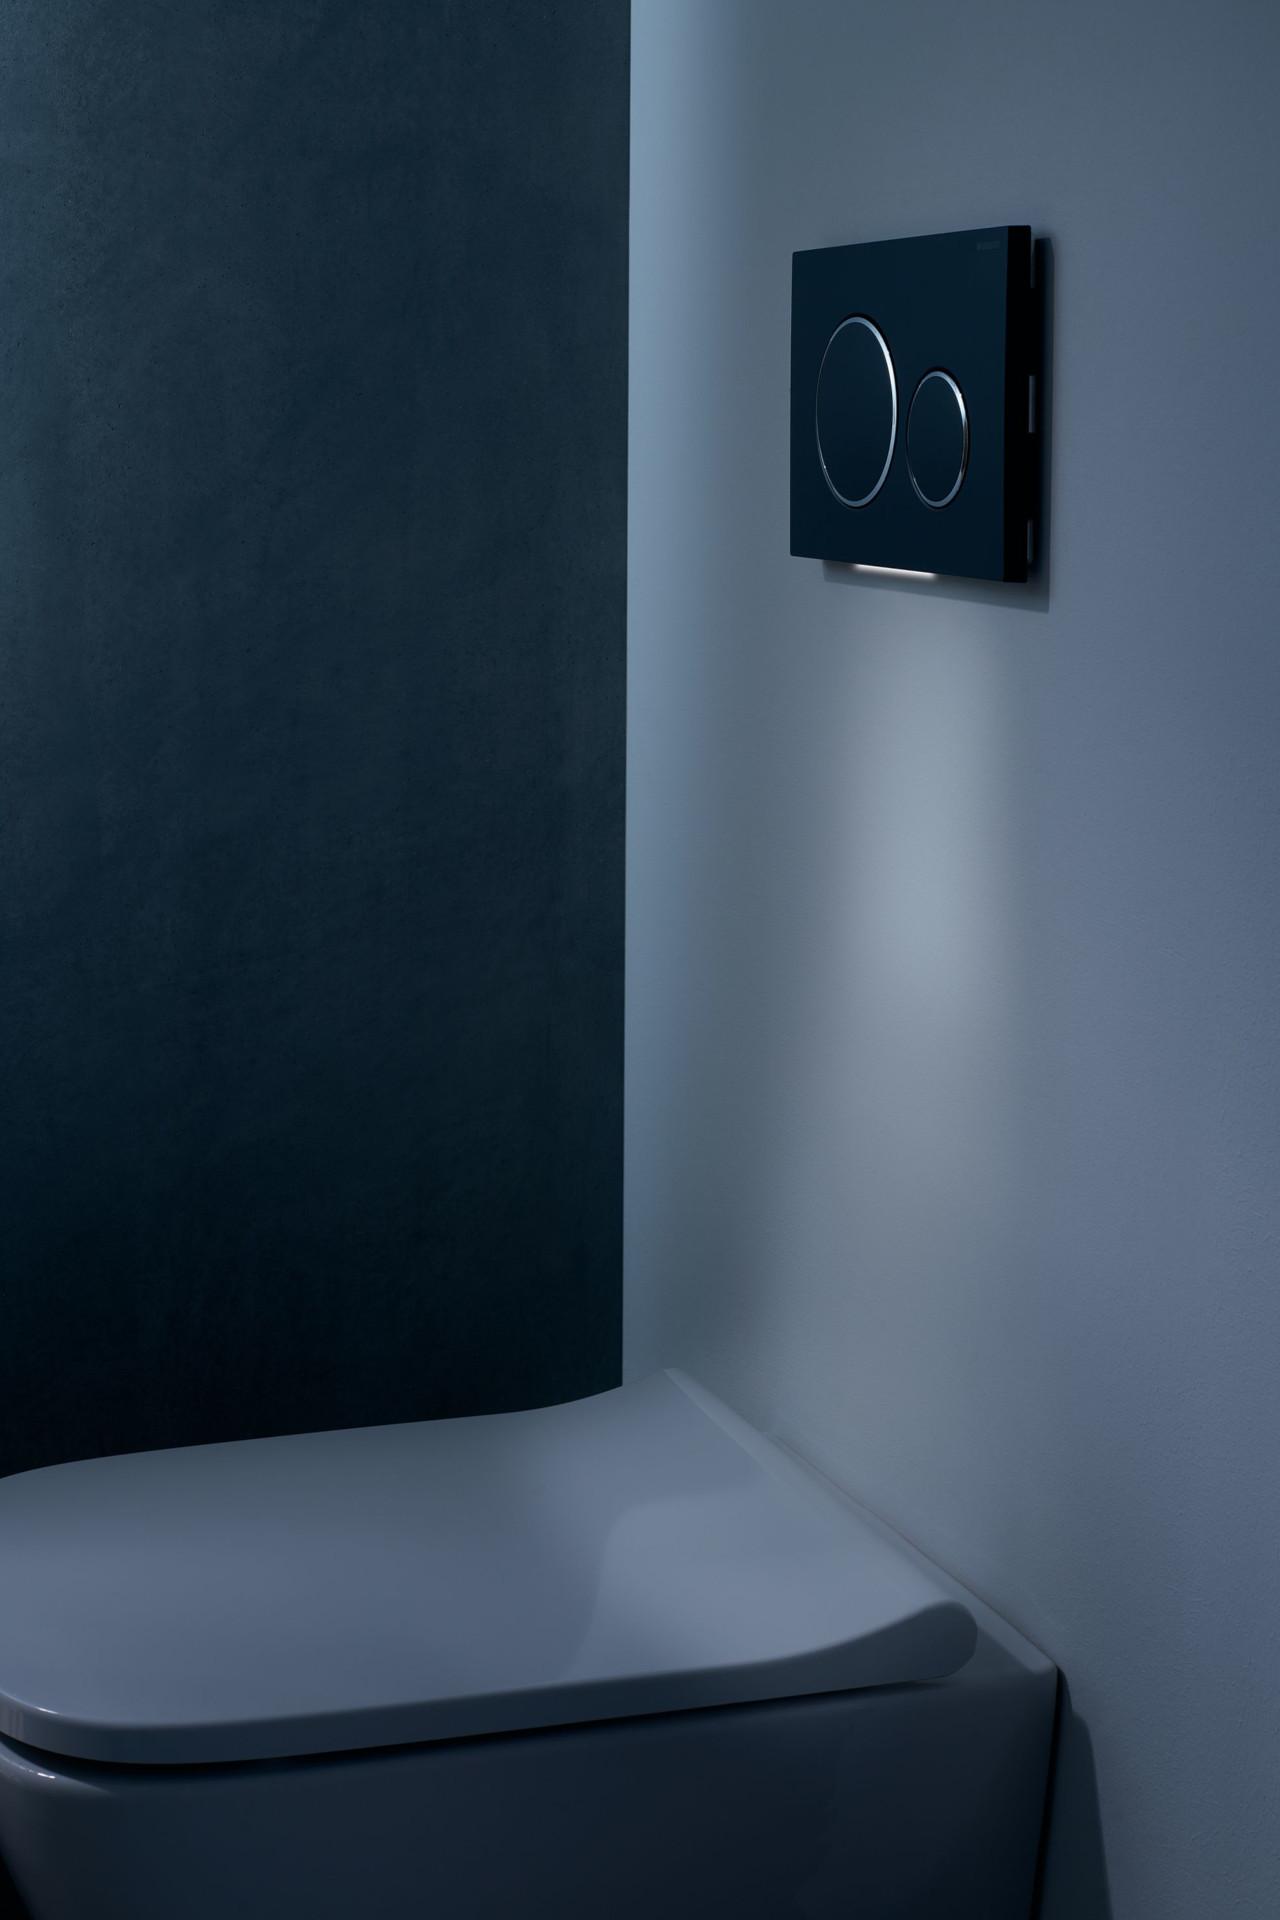 Yöllisiä vessakäyntejä varten huuhtelupainikkeen alla on led-valo, joka syttyy ja sammuu automaattisesti.